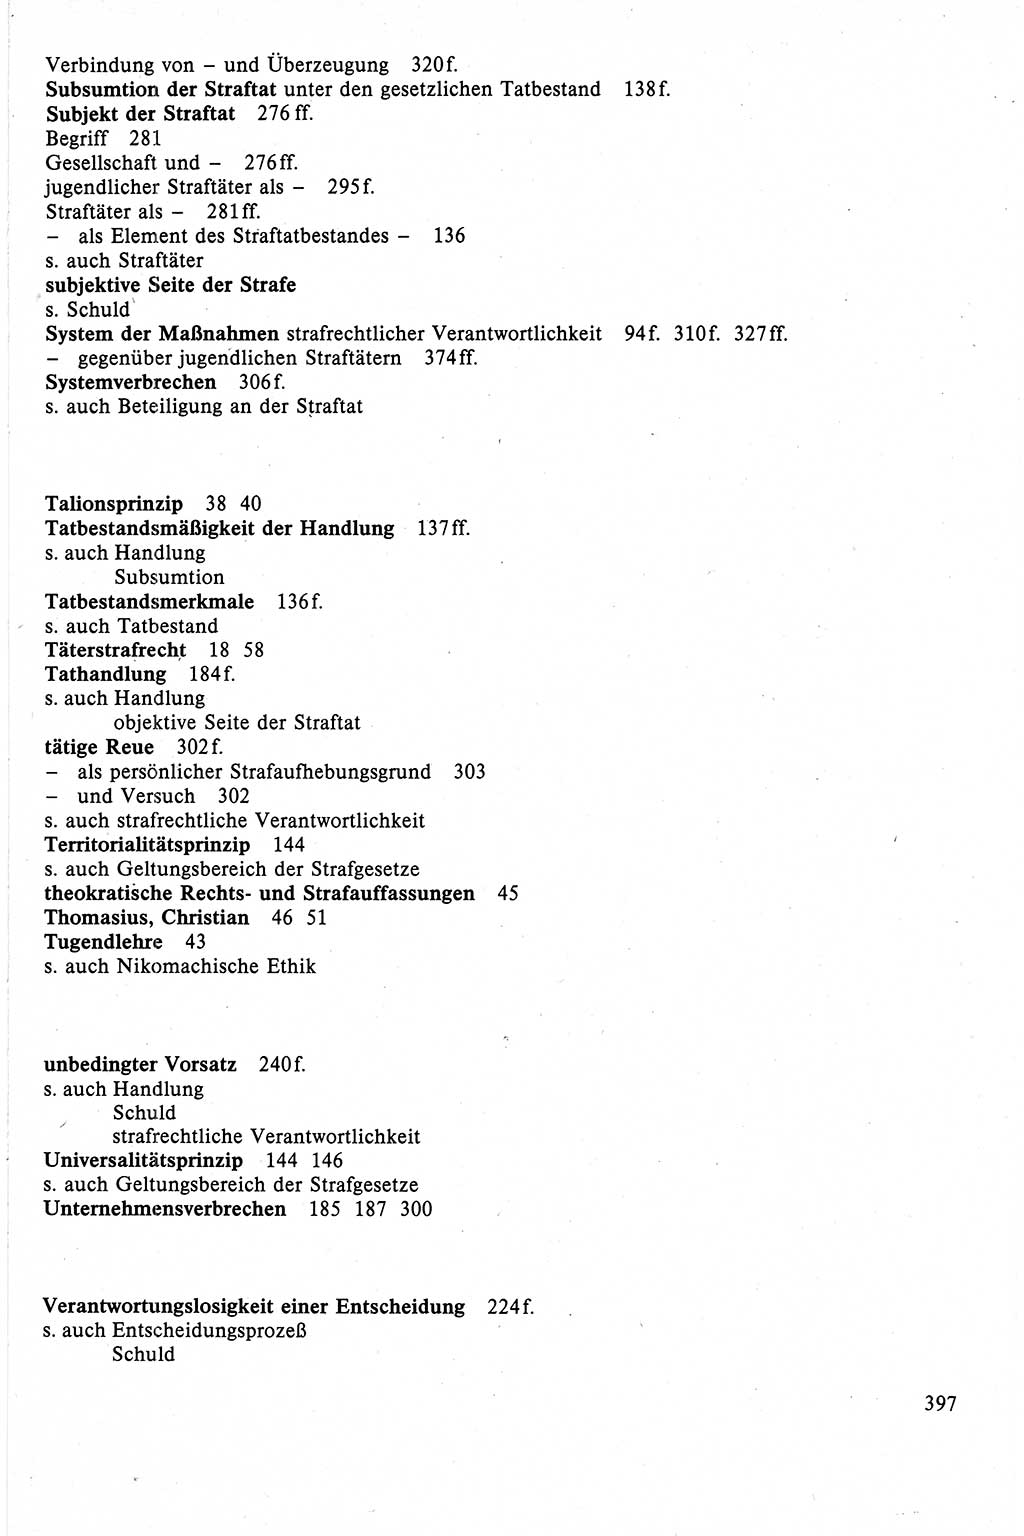 Strafrecht der DDR (Deutsche Demokratische Republik), Lehrbuch 1988, Seite 397 (Strafr. DDR Lb. 1988, S. 397)